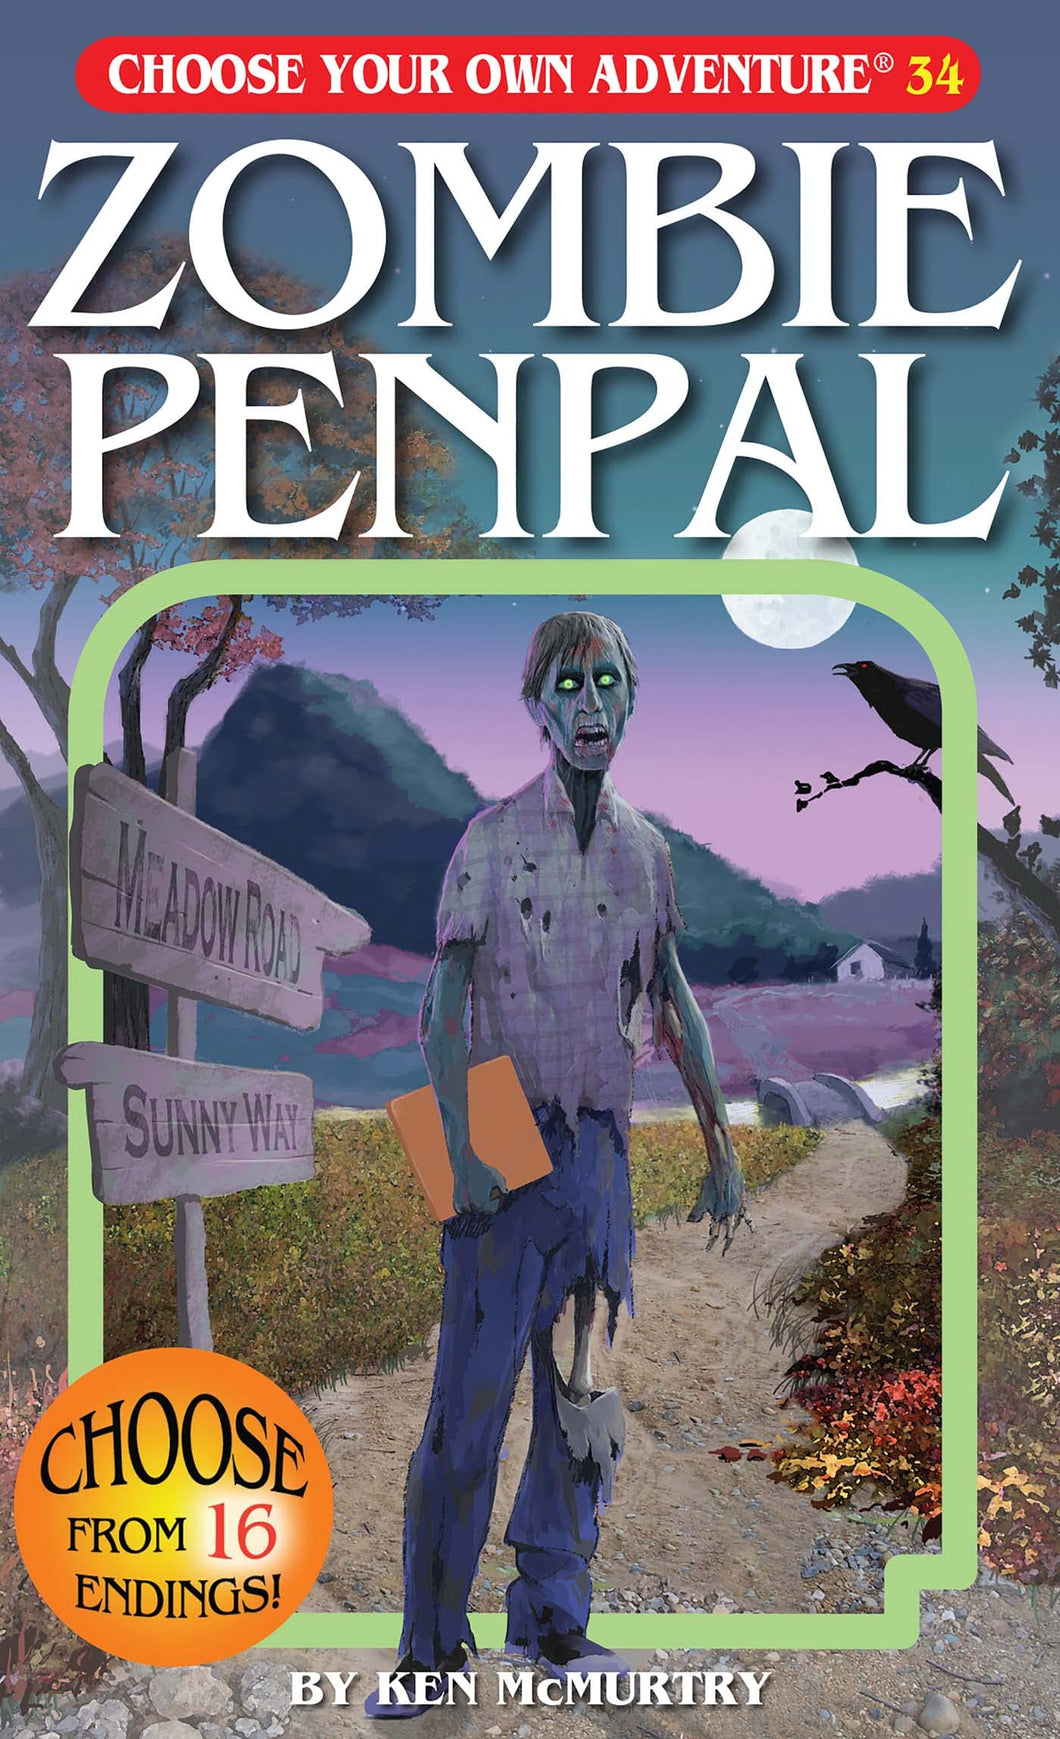 Choose Your Own Adventure Zombie Penpal